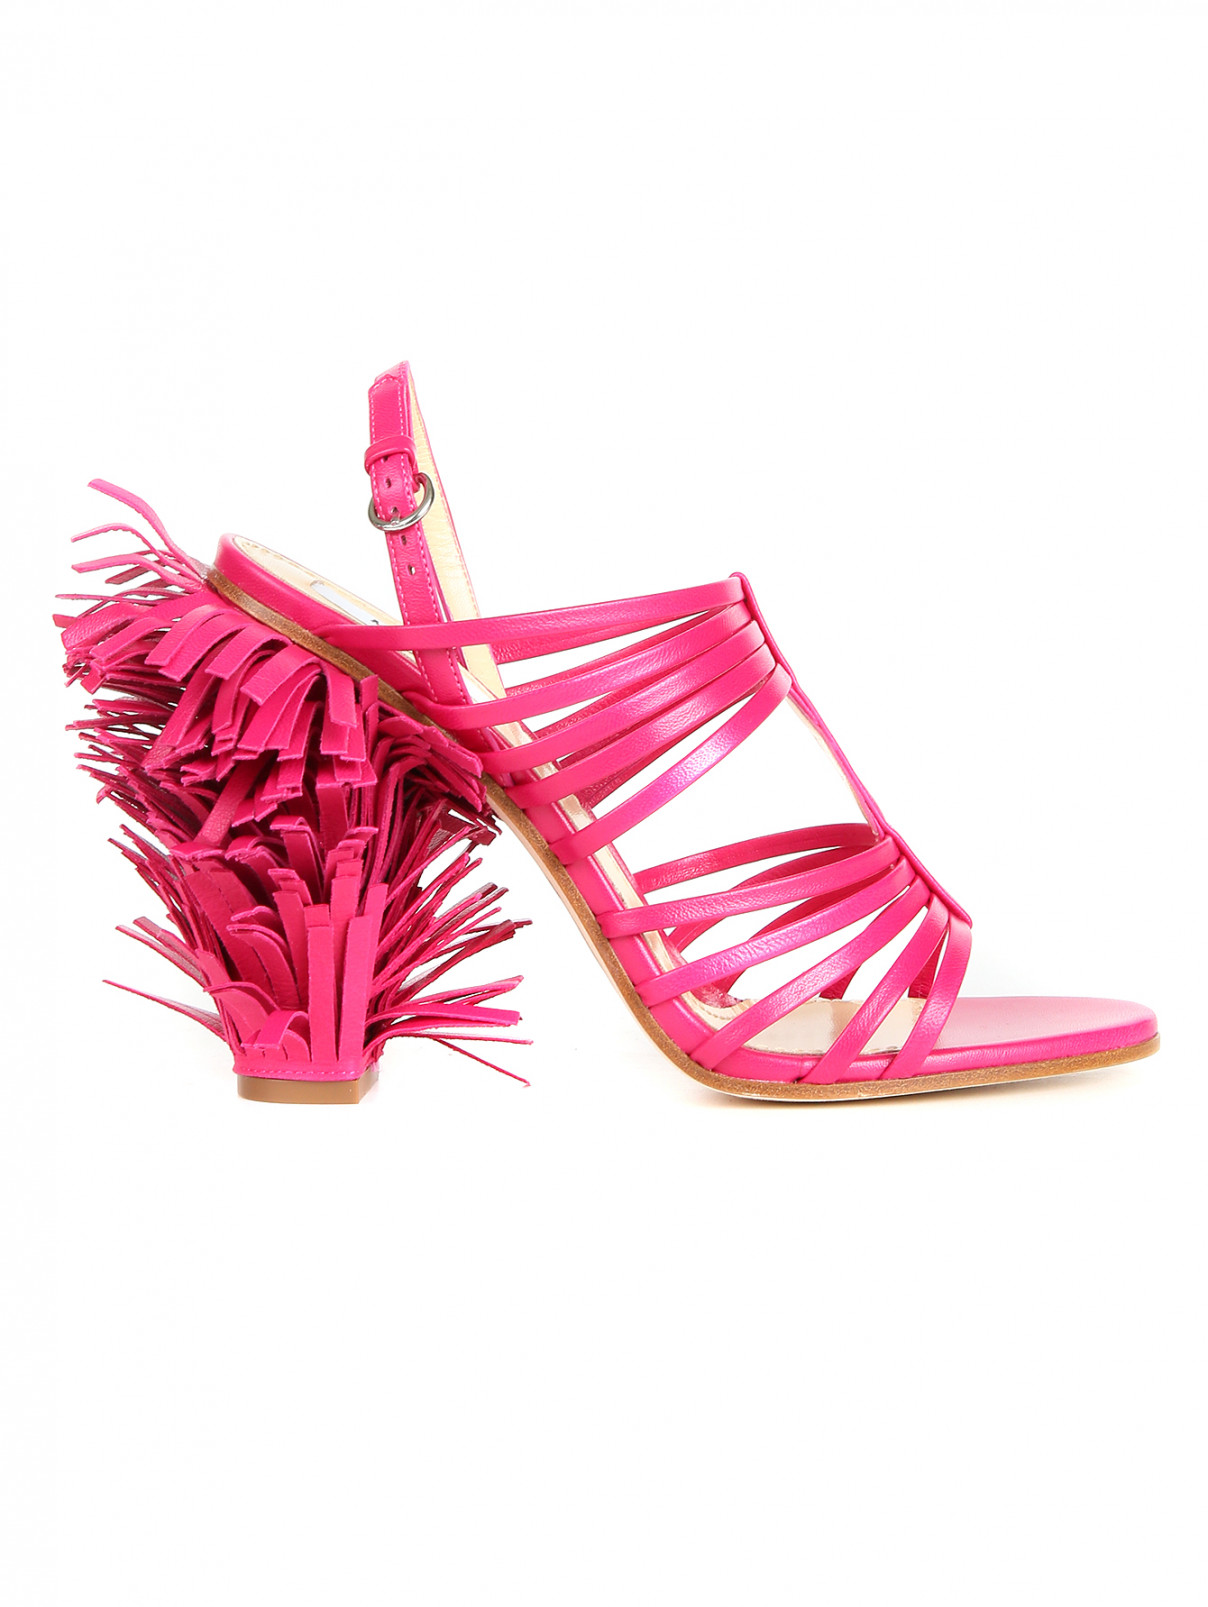 Босоножки из кожи с бахромой на каблуке Moschino Couture  –  Обтравка1  – Цвет:  Фиолетовый